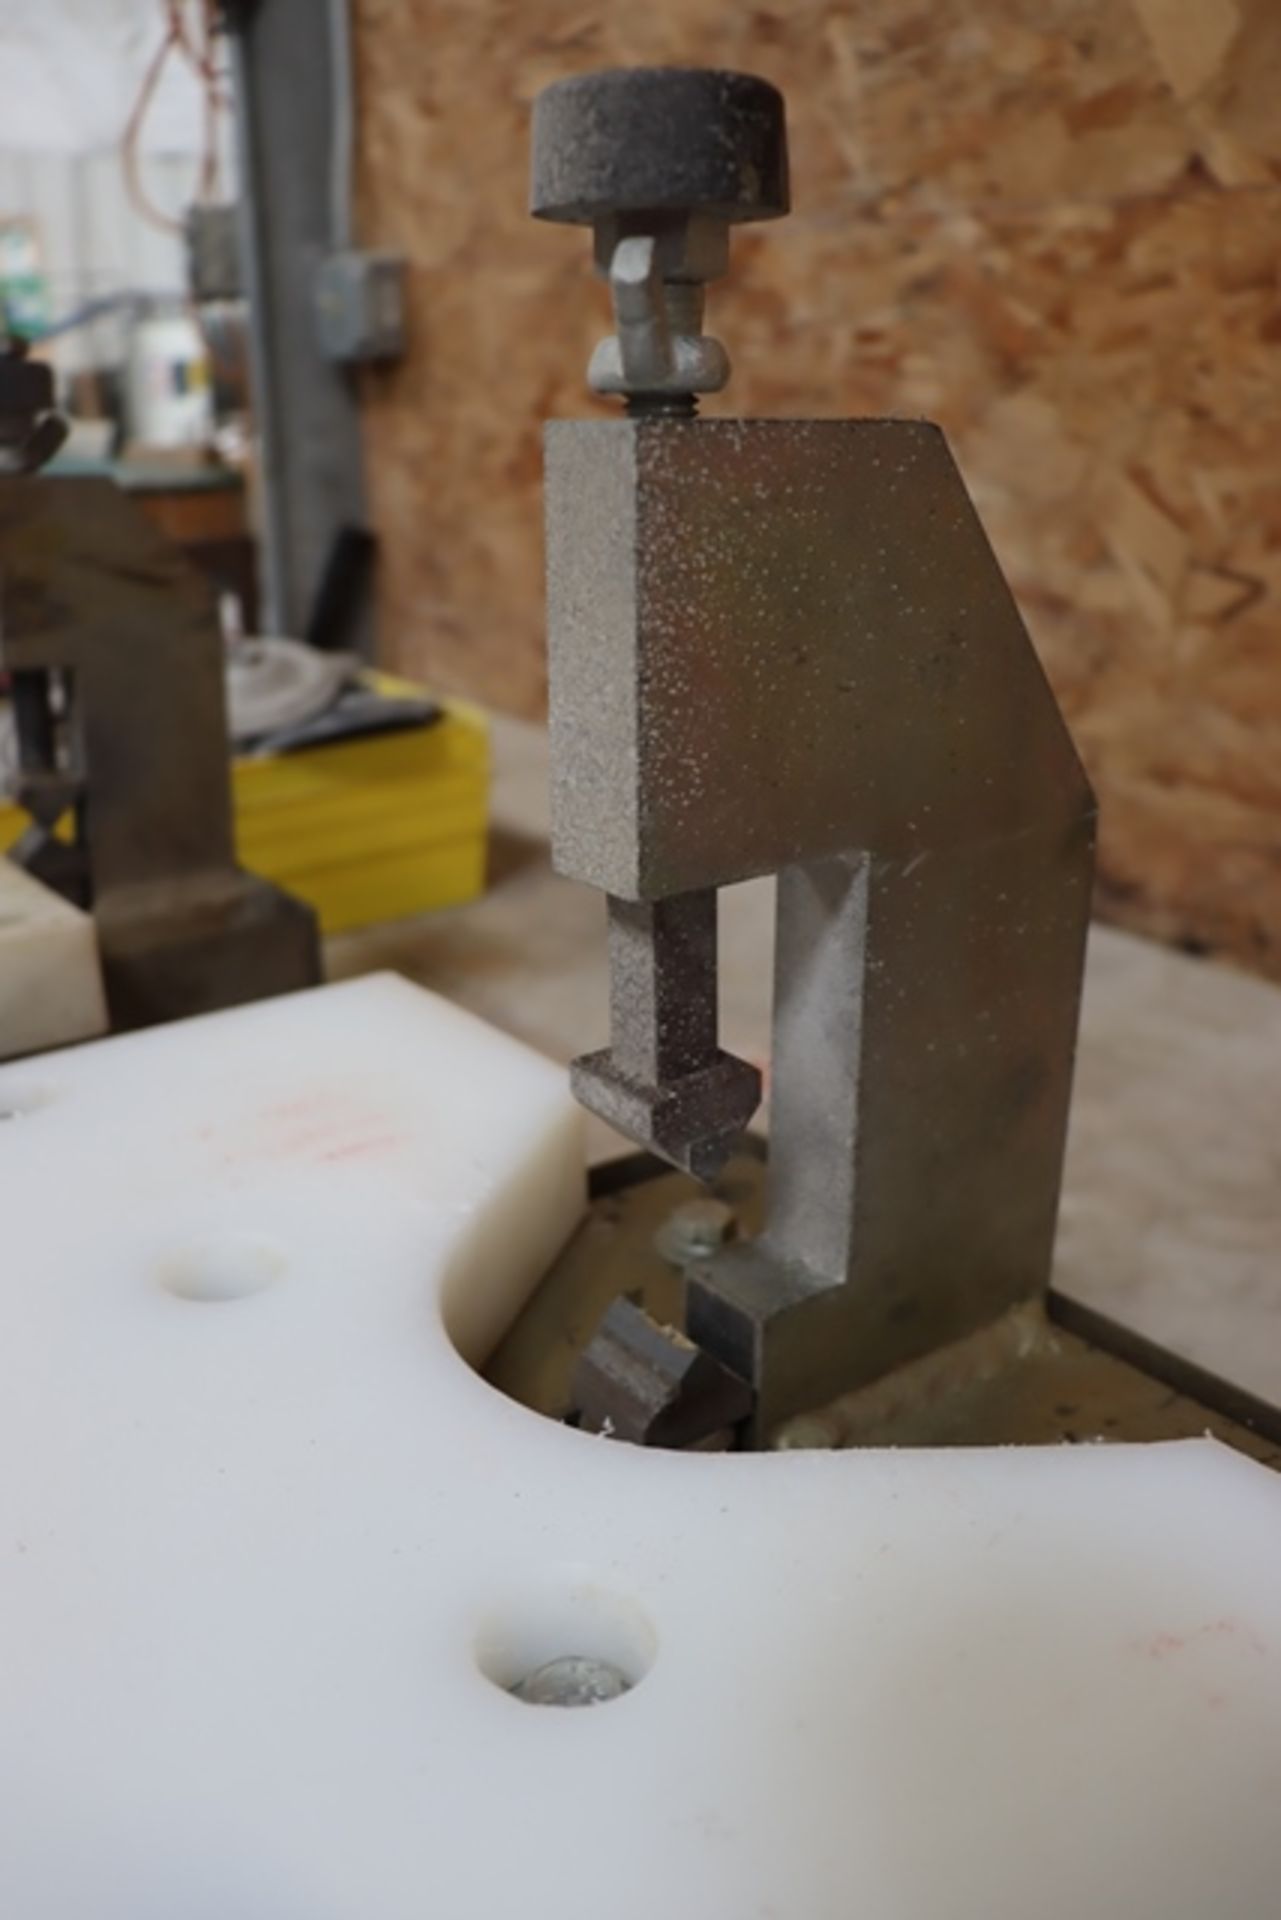 The Beaver stone pro edge chiseling machine Large 2/3/4" Stone - Image 3 of 3